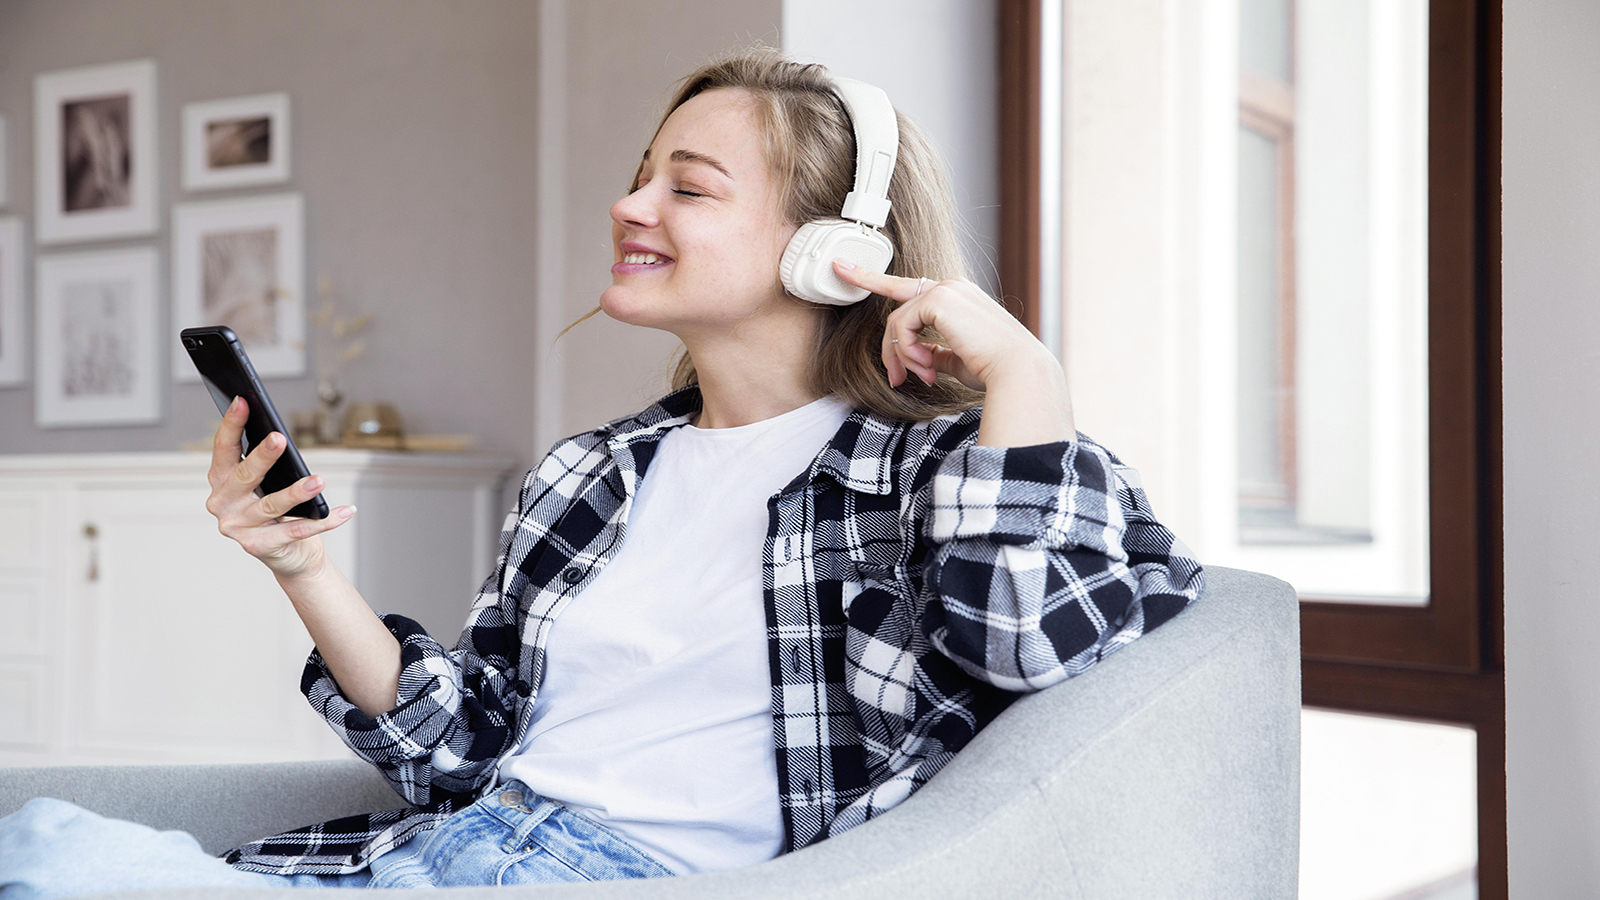 Müzik dinlemek için kullanabileceğiniz 10 uygulama